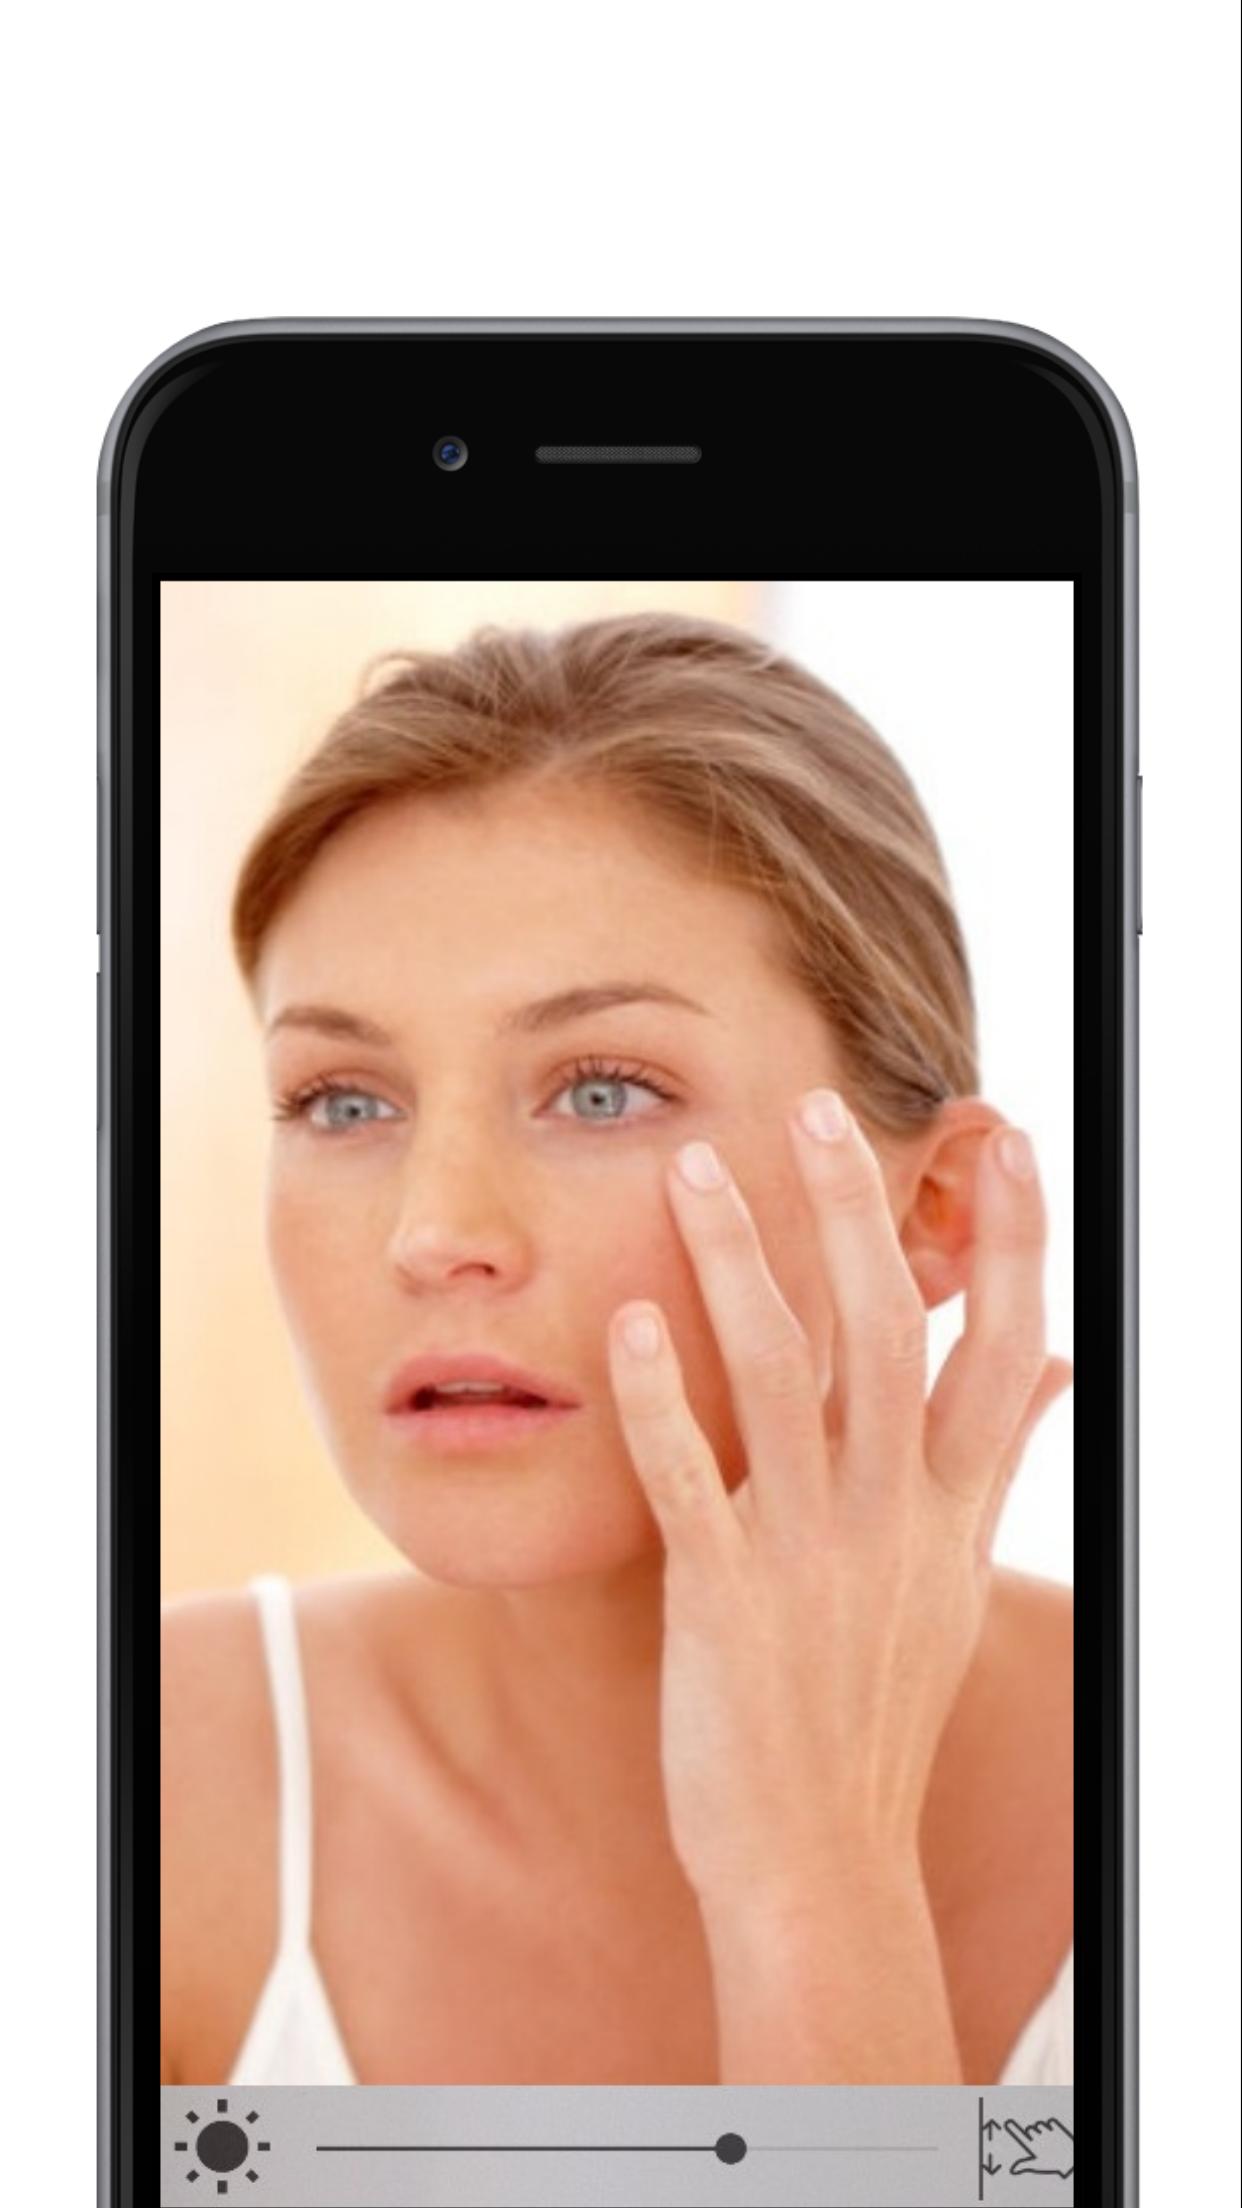 zeer duidelijke spiegel - check echt mijn gezicht for Android - APK Download